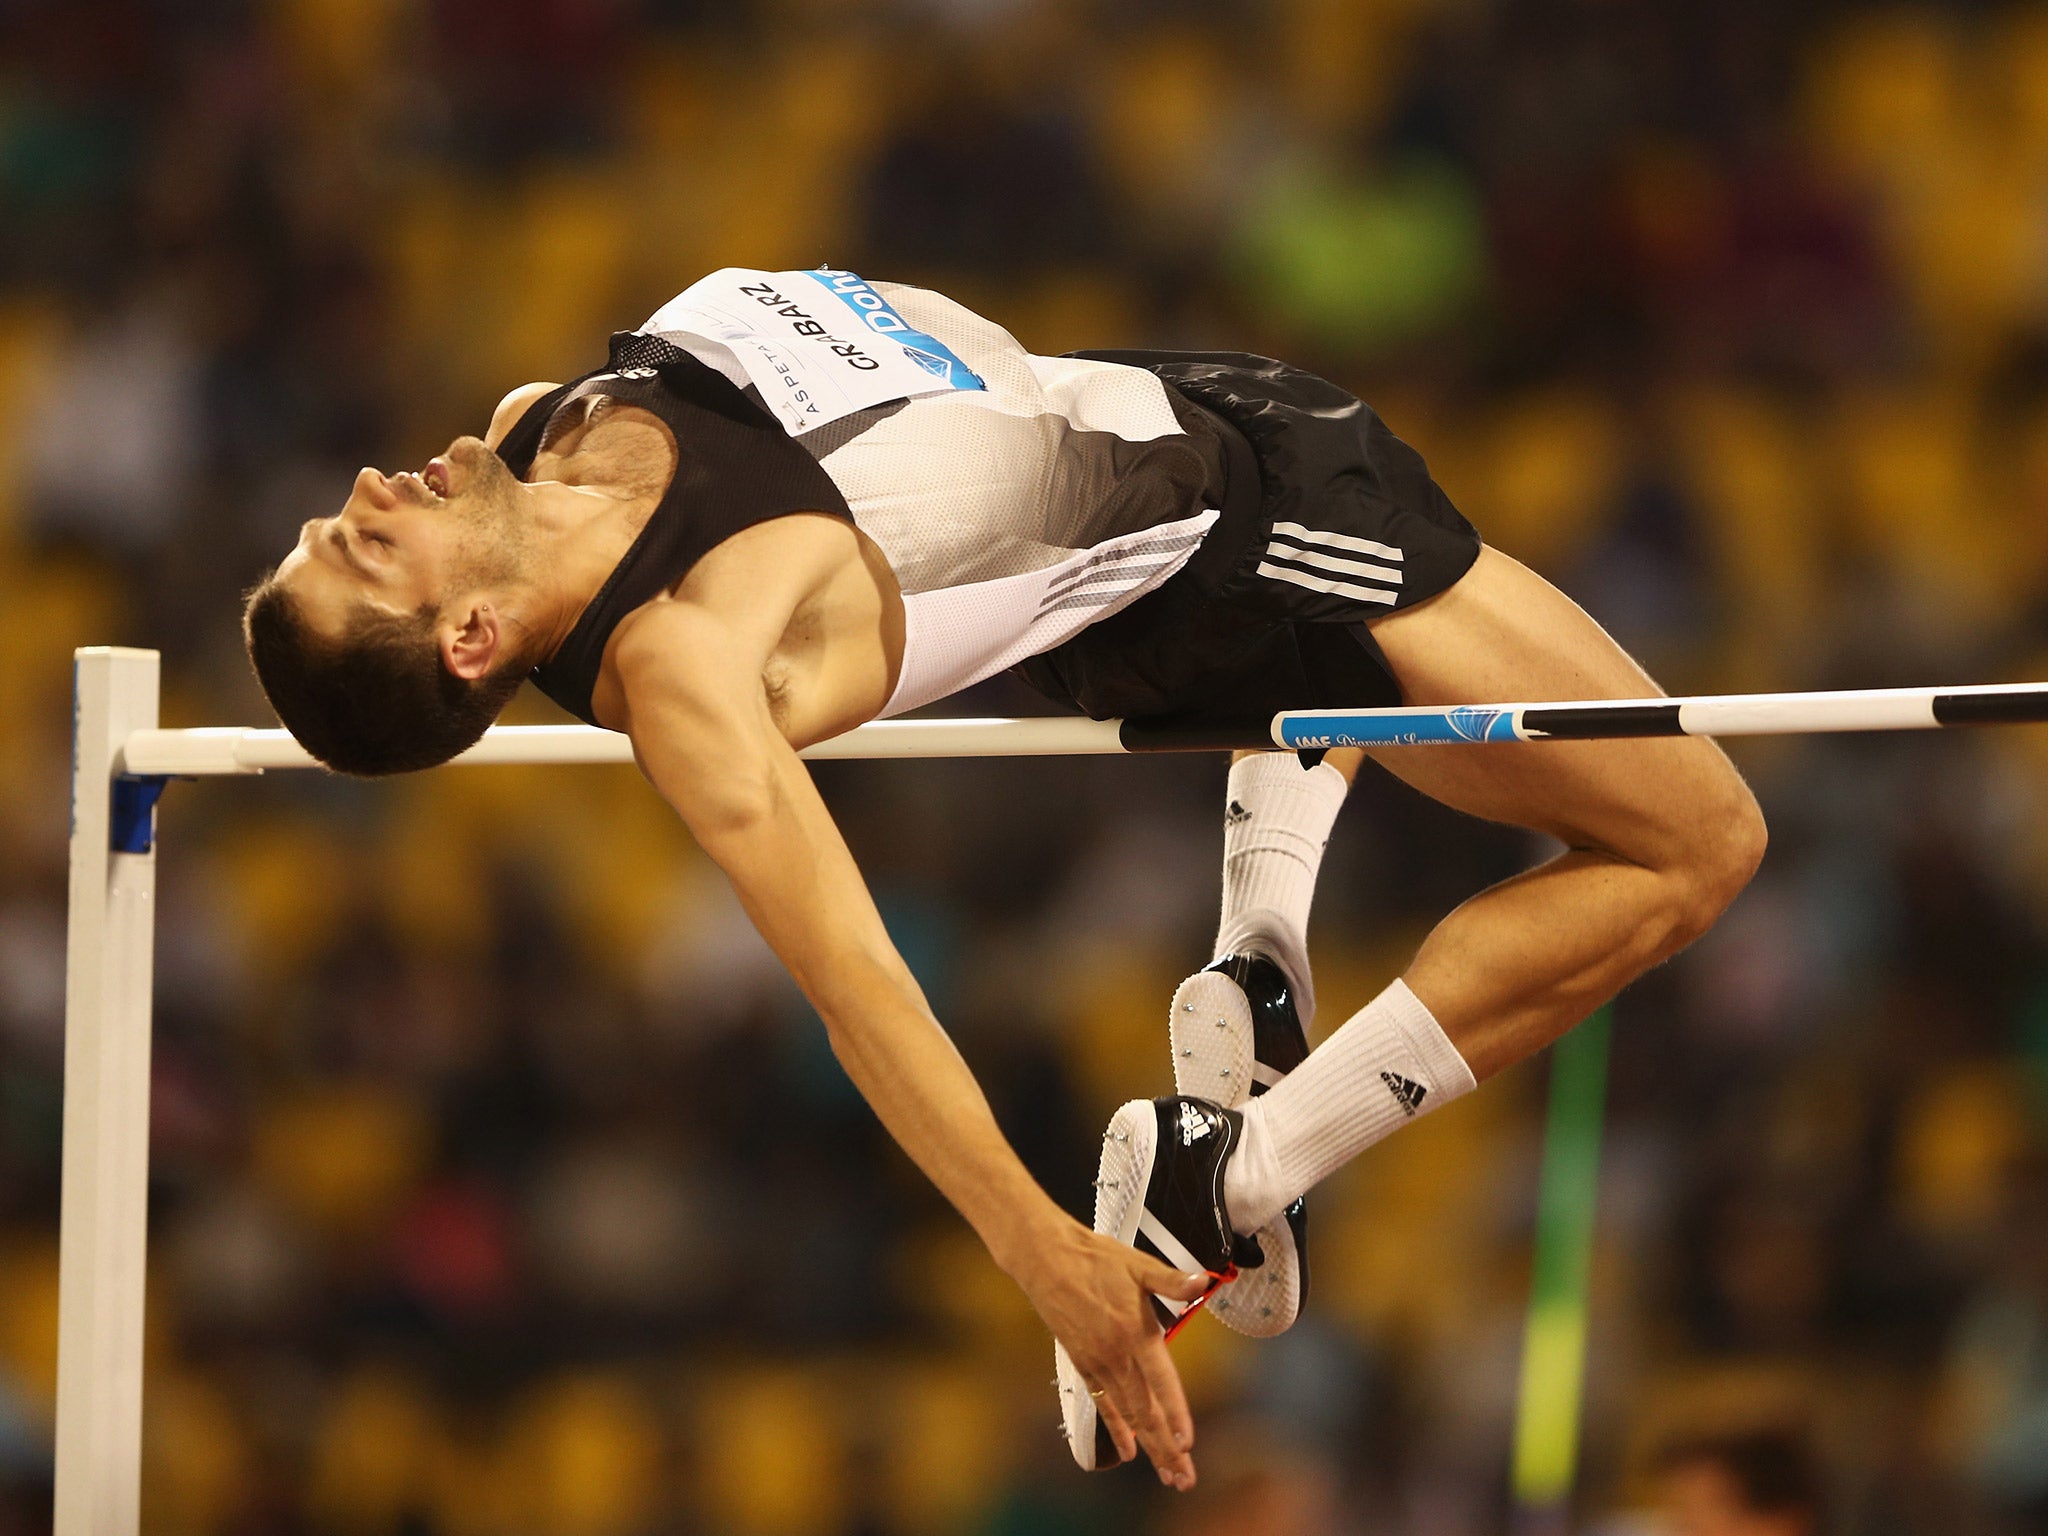 British high jumper Robbie Grabarz